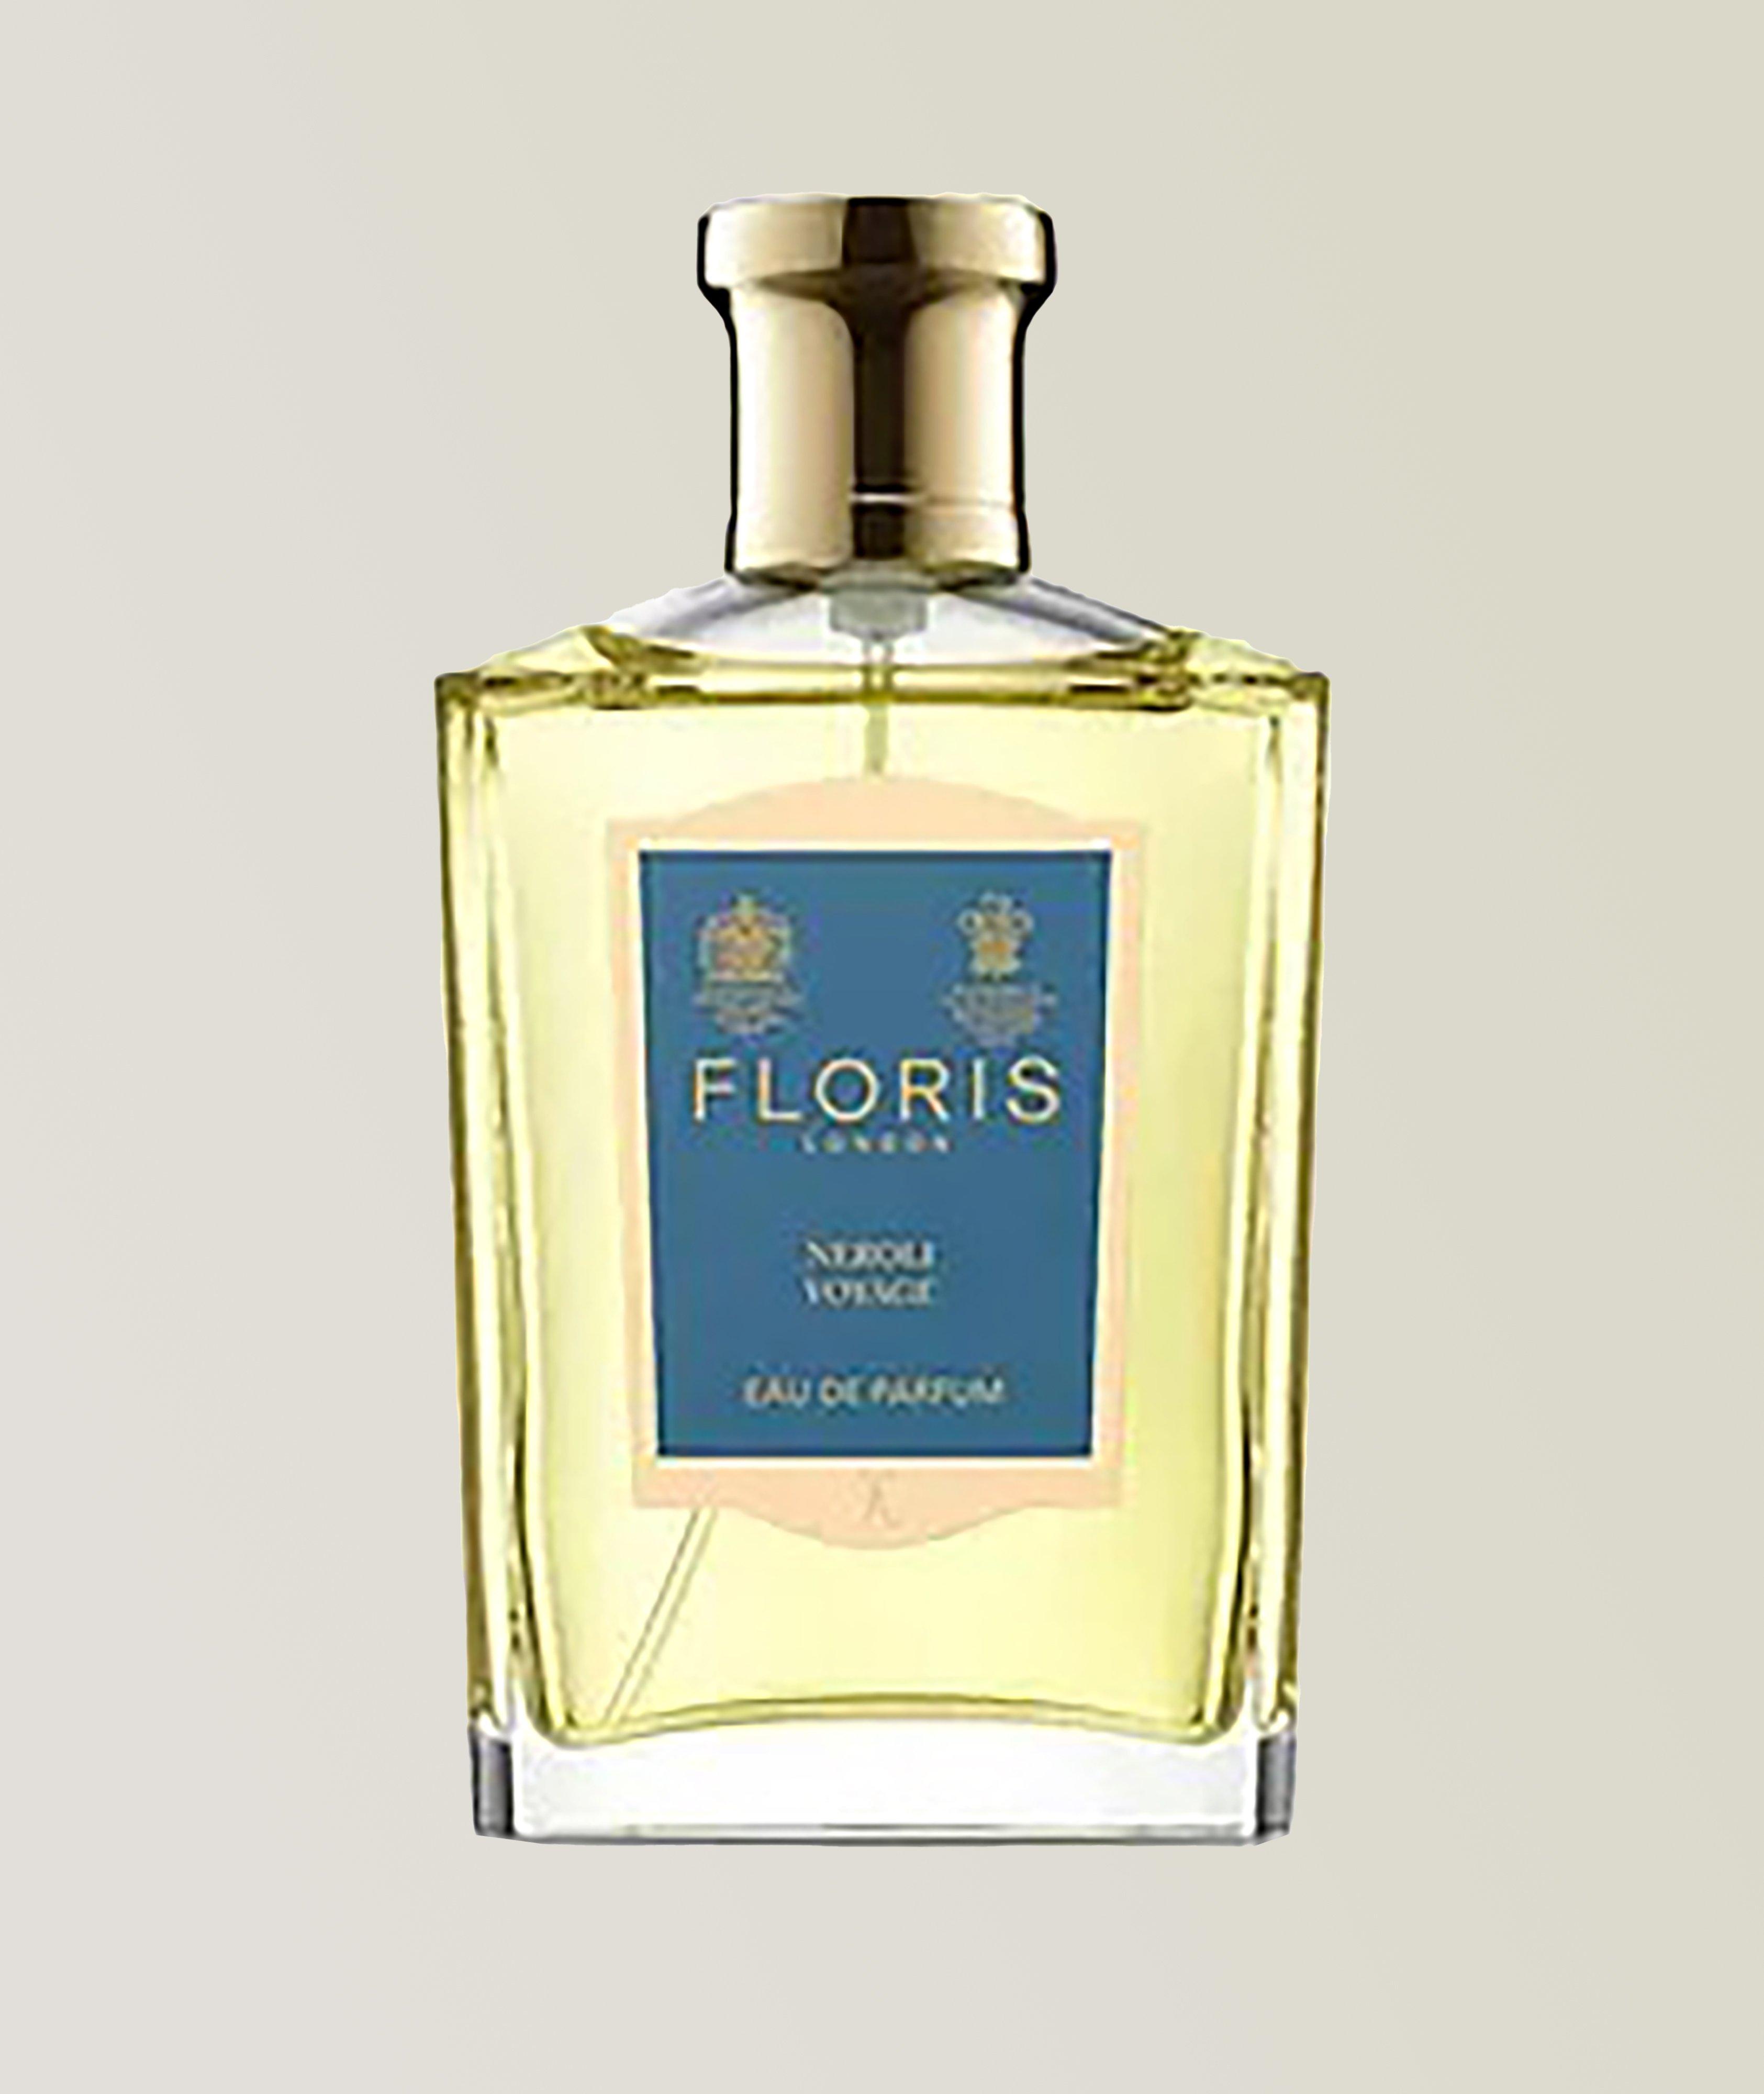 Floris London Eau de parfum en atomiseur Neroli Voyage 100ml